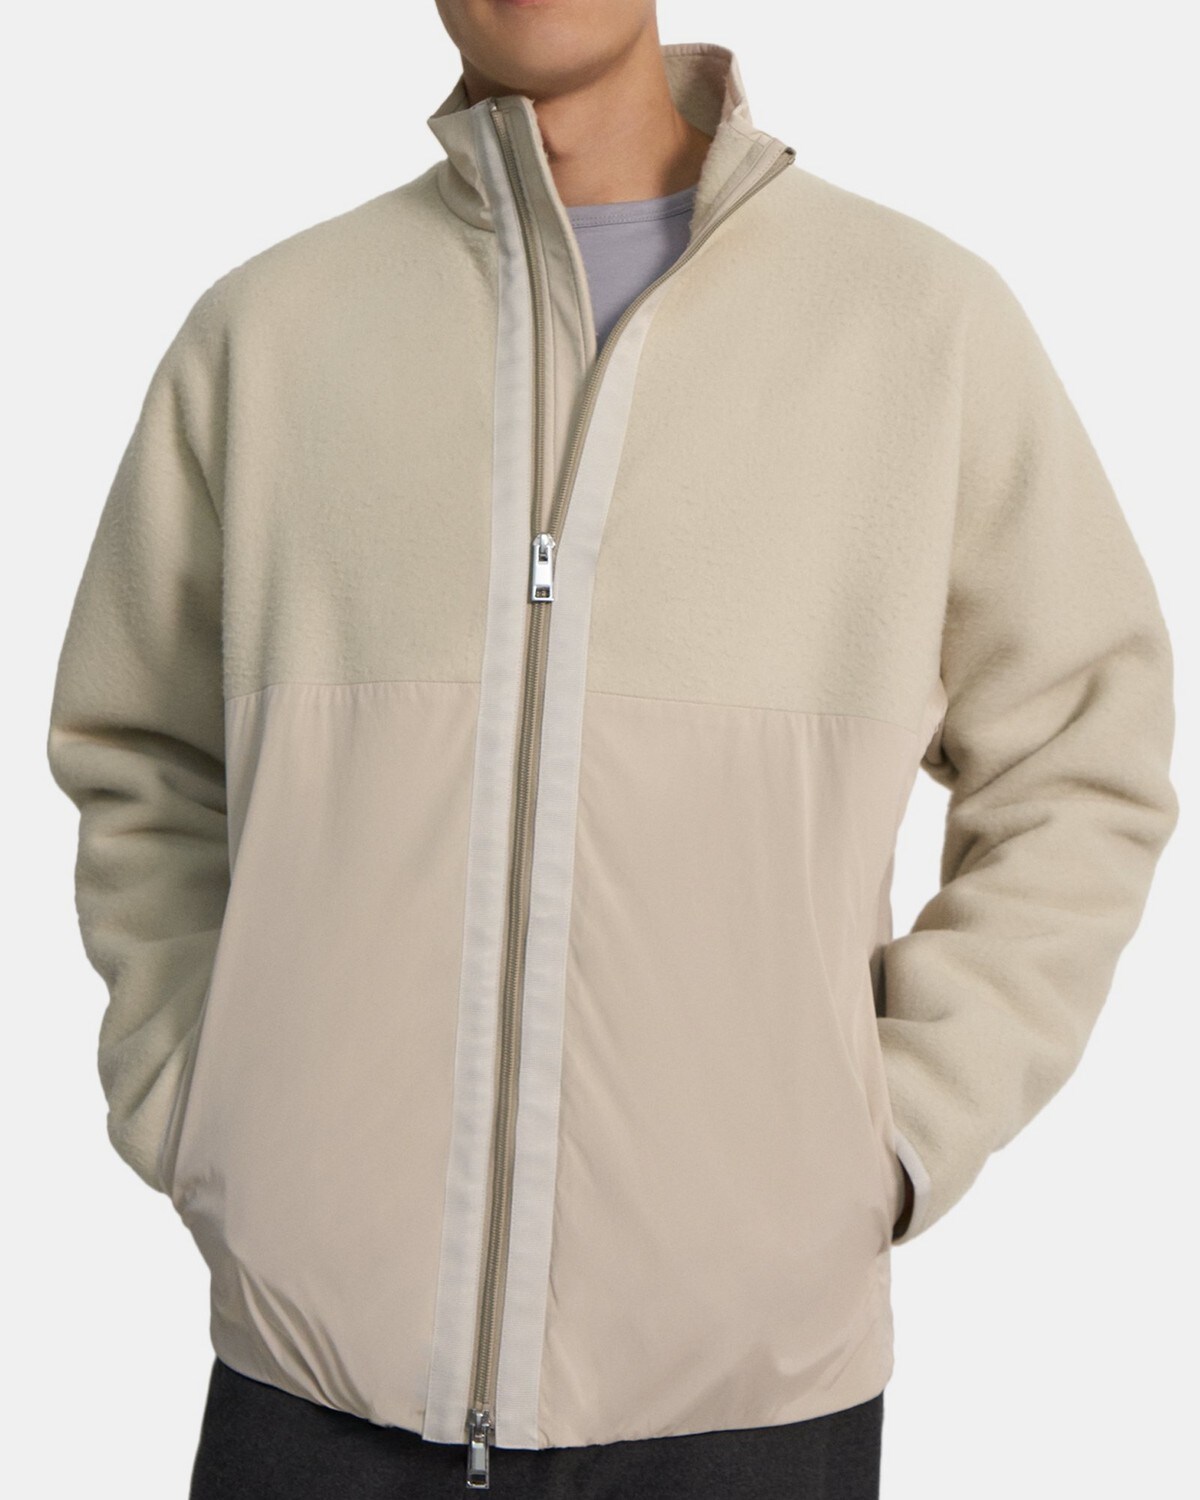 띠어리 맨 재킷 Theory Zip Jacket in Recycled Fleece,PEYOTE/PEYOTE